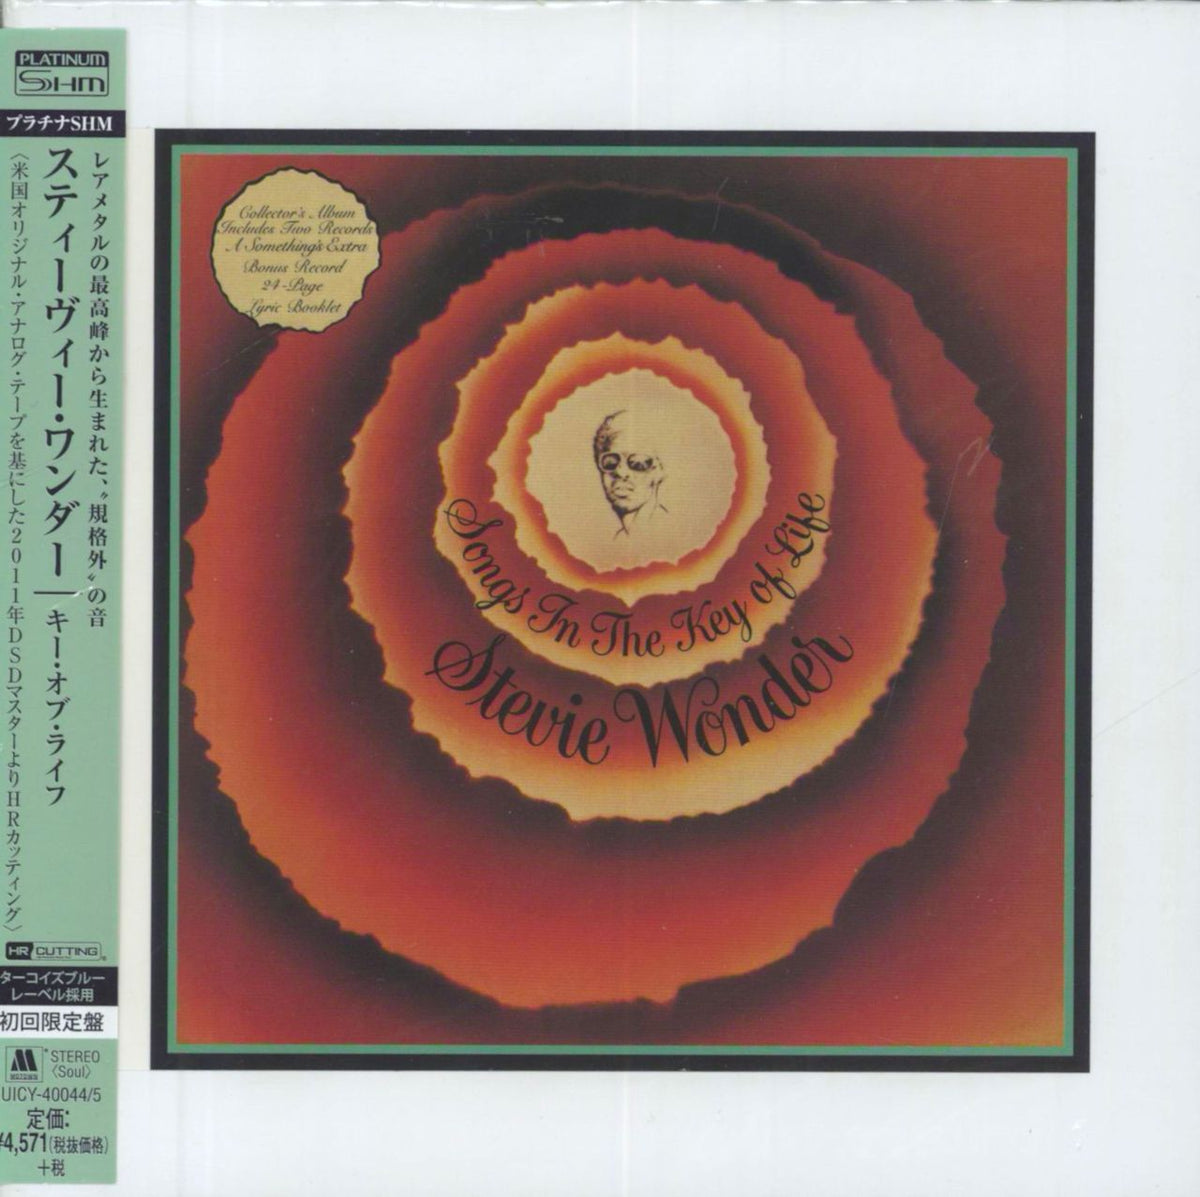 Stevie Wonder Songs In The Key Of Life Japanese SHM CD —